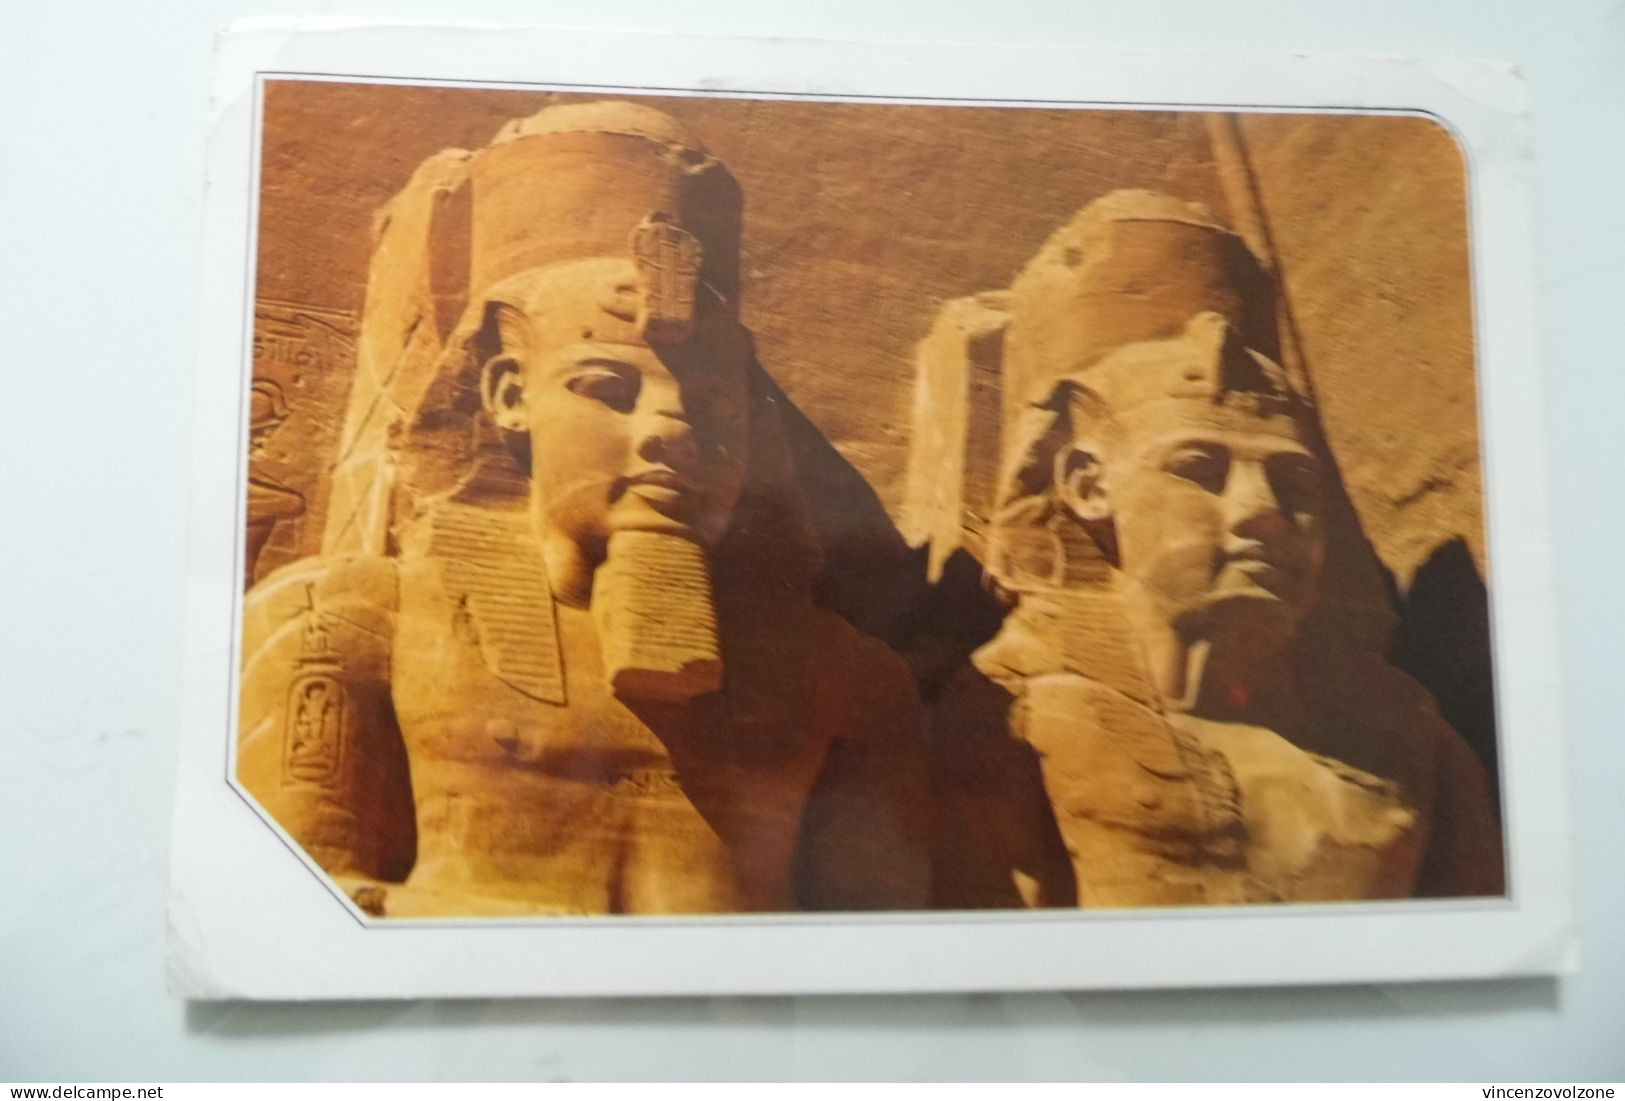 Cartolina Viaggiata "ABOU SIMBEL" 1995 - Temples D'Abou Simbel